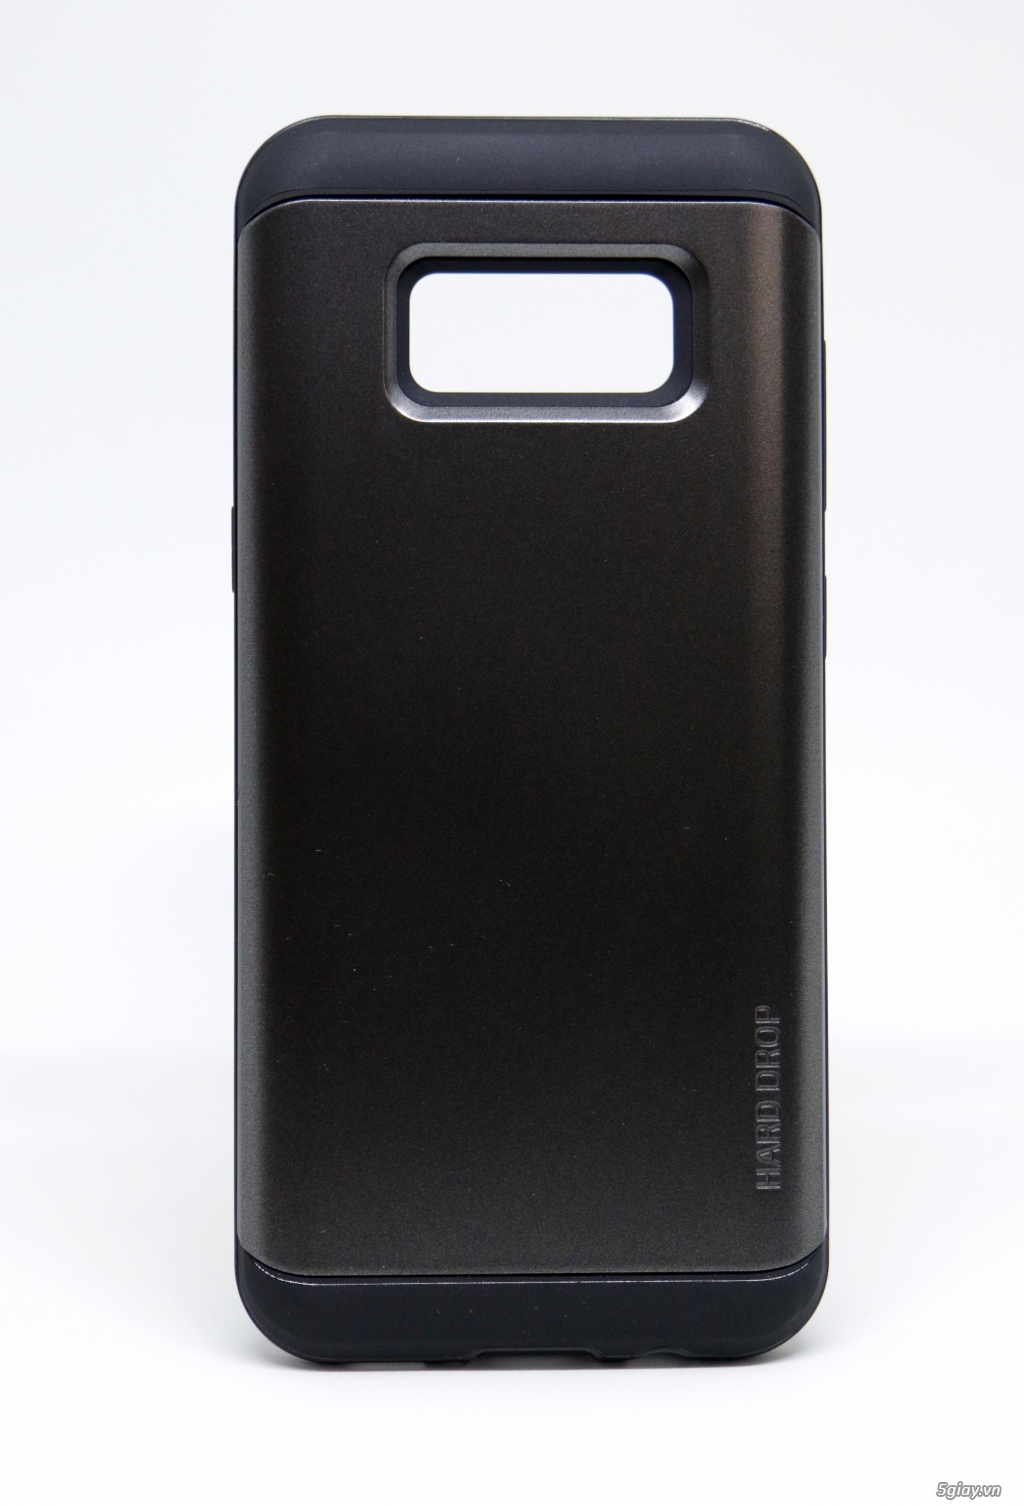 Ốp lưng Lumion SS Galaxy S8, S8 Plus cực đẹp, chất lượng Mỹ!!!!!!!!! - 8